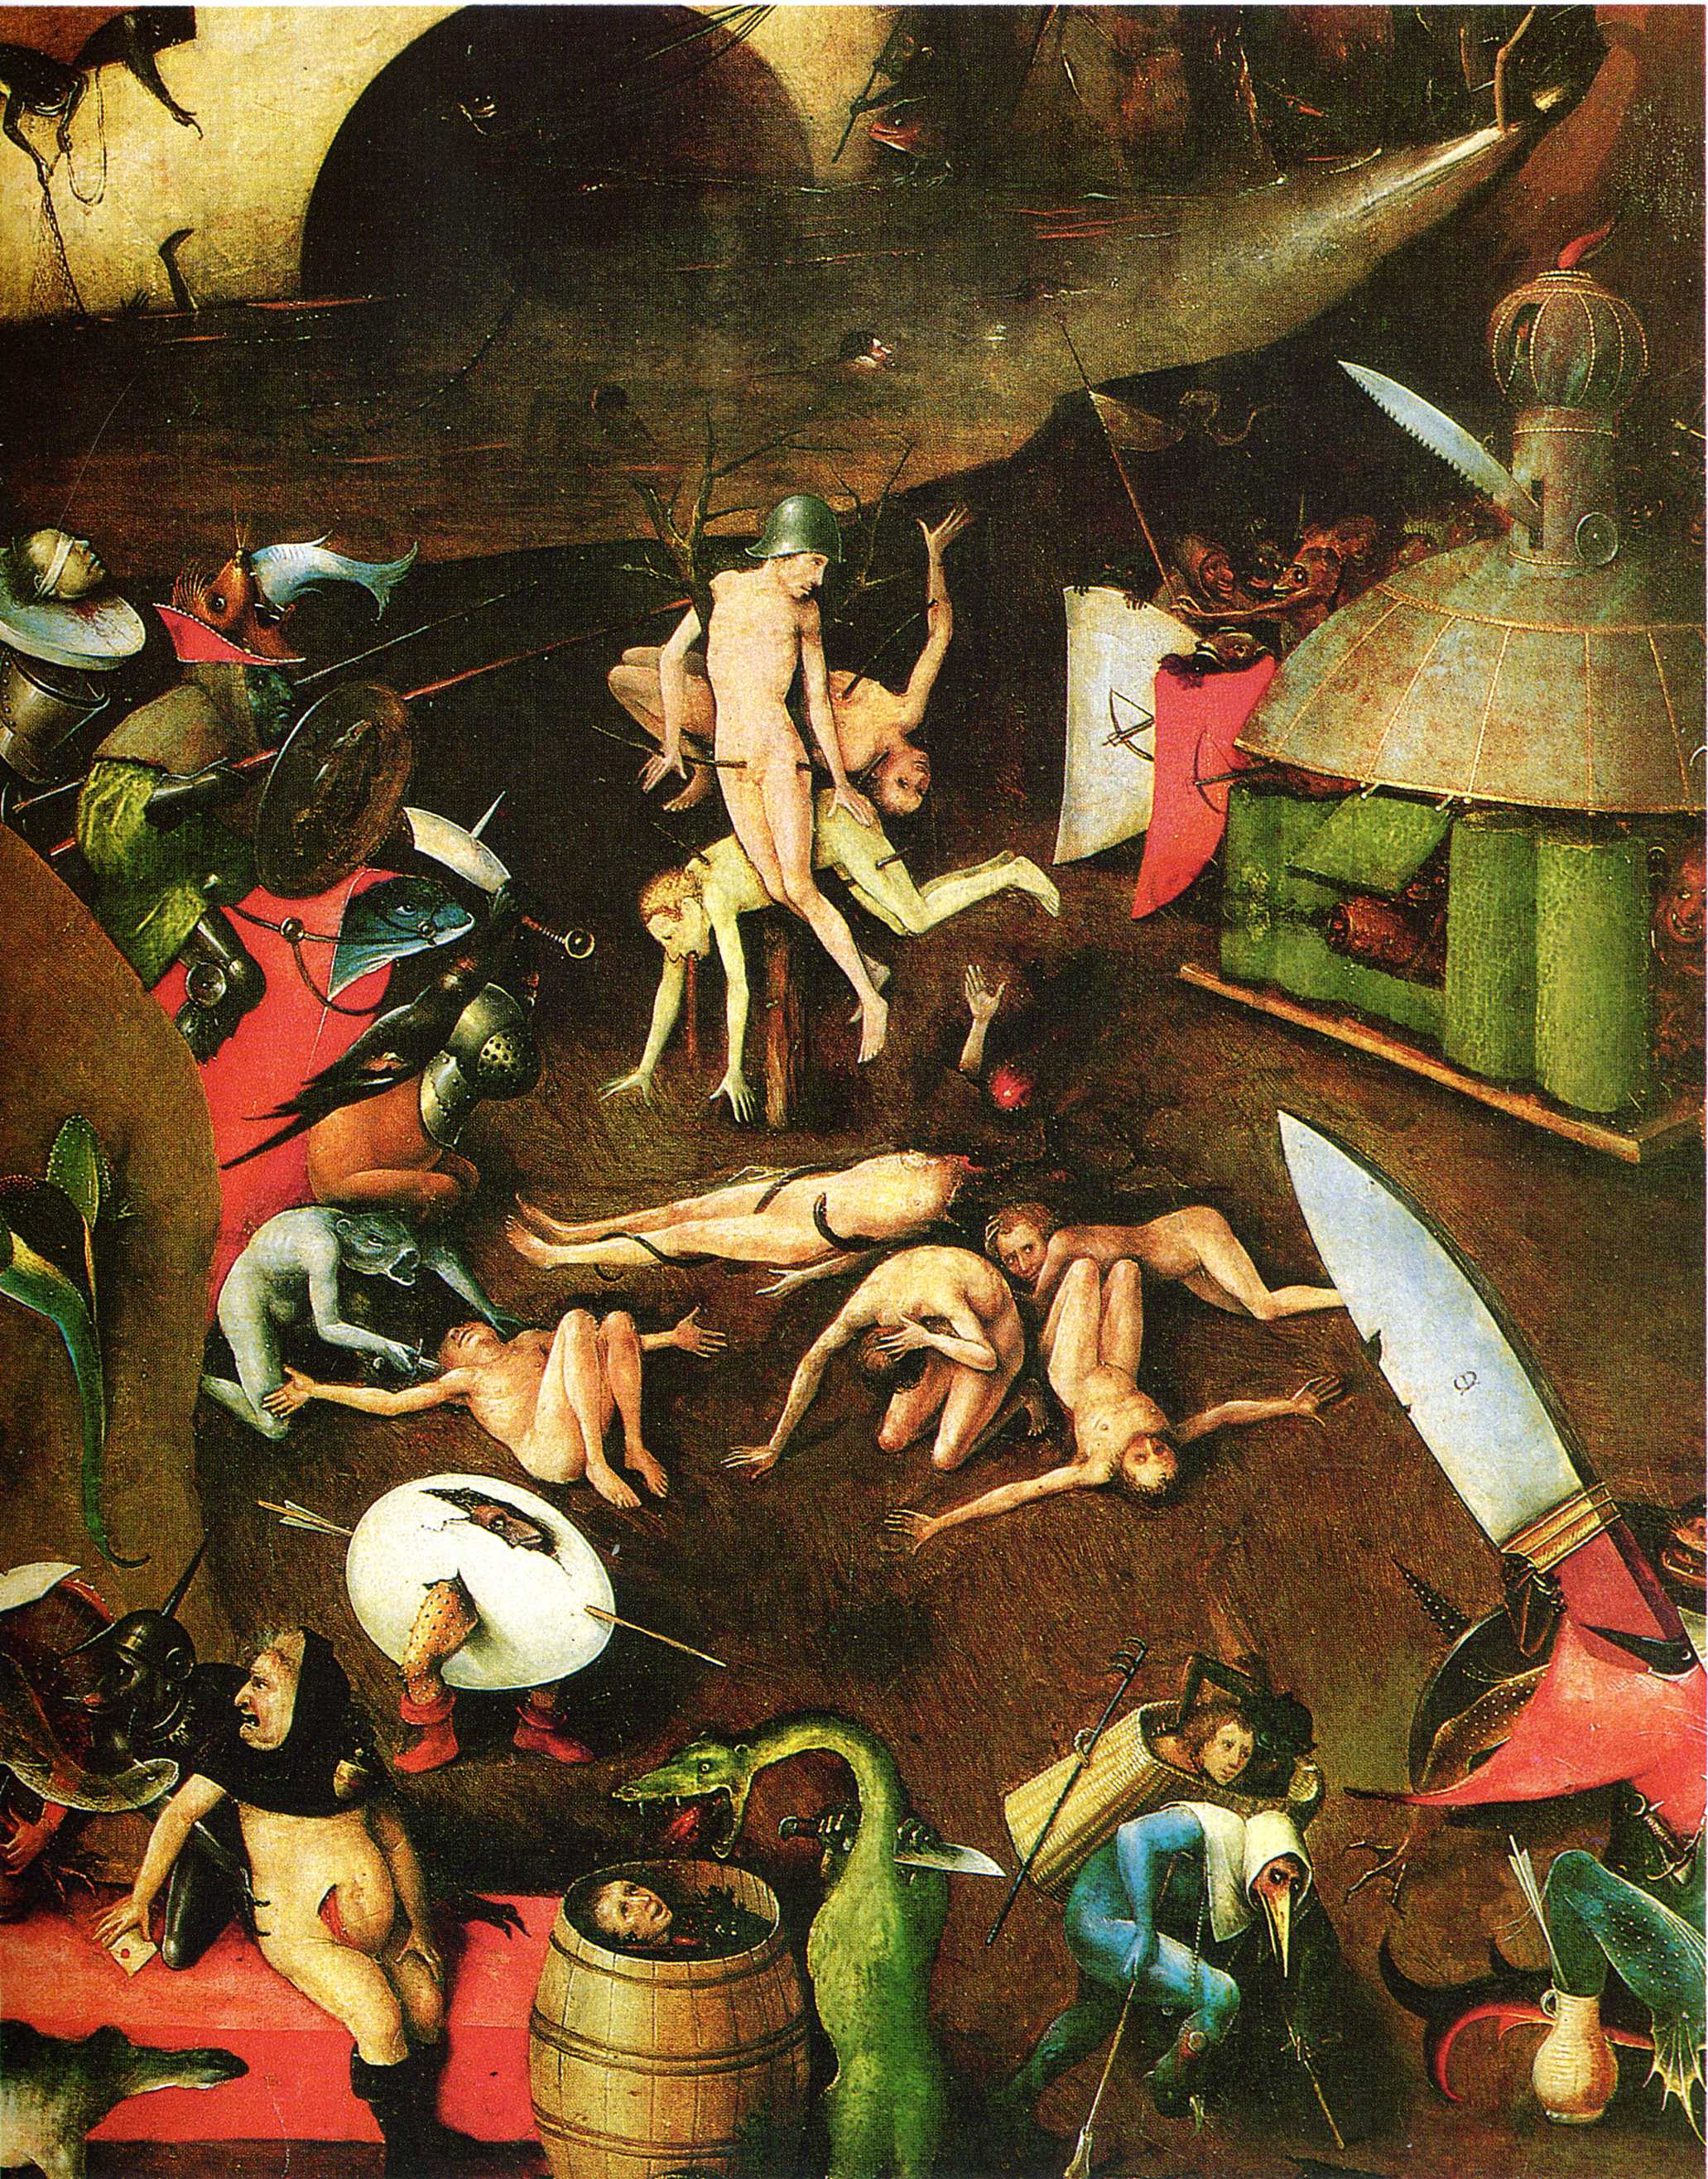 The Last Judgement (detail) (1482).